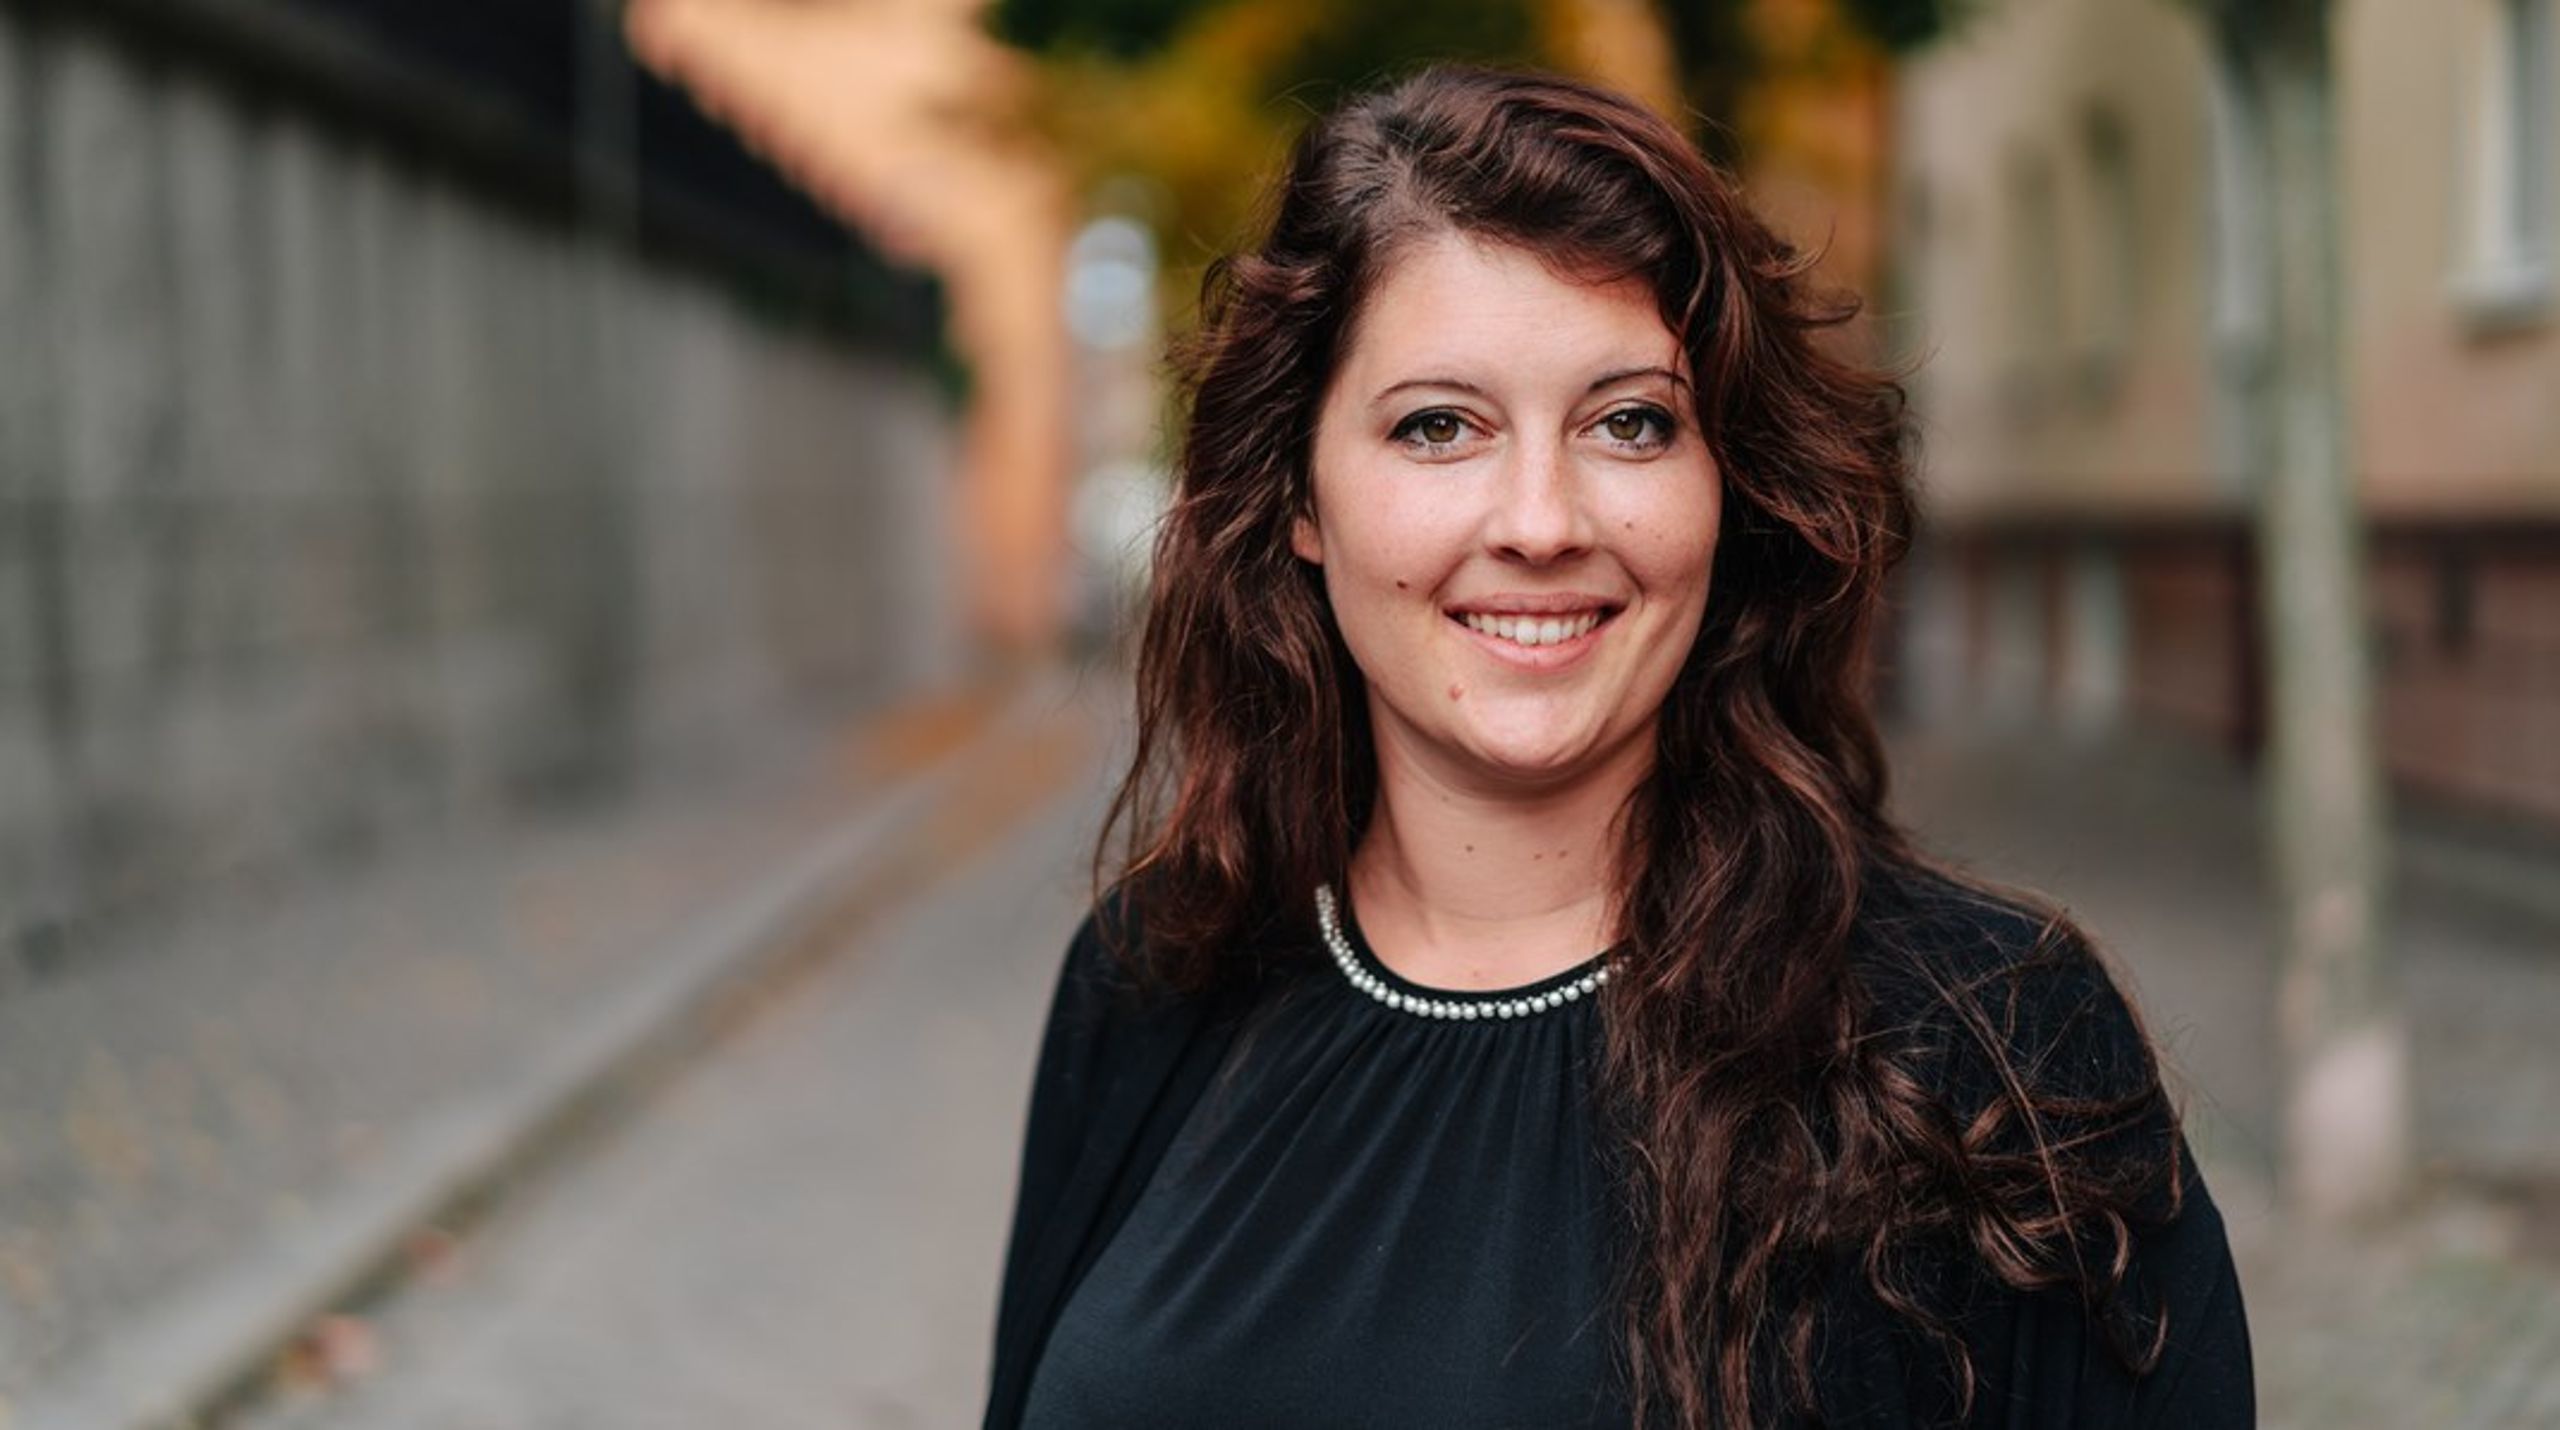 Beatrice Rindevall kan bli ny ordförande för Naturskyddsföreningen vid riksstämman i Västerås i mitten av juni.